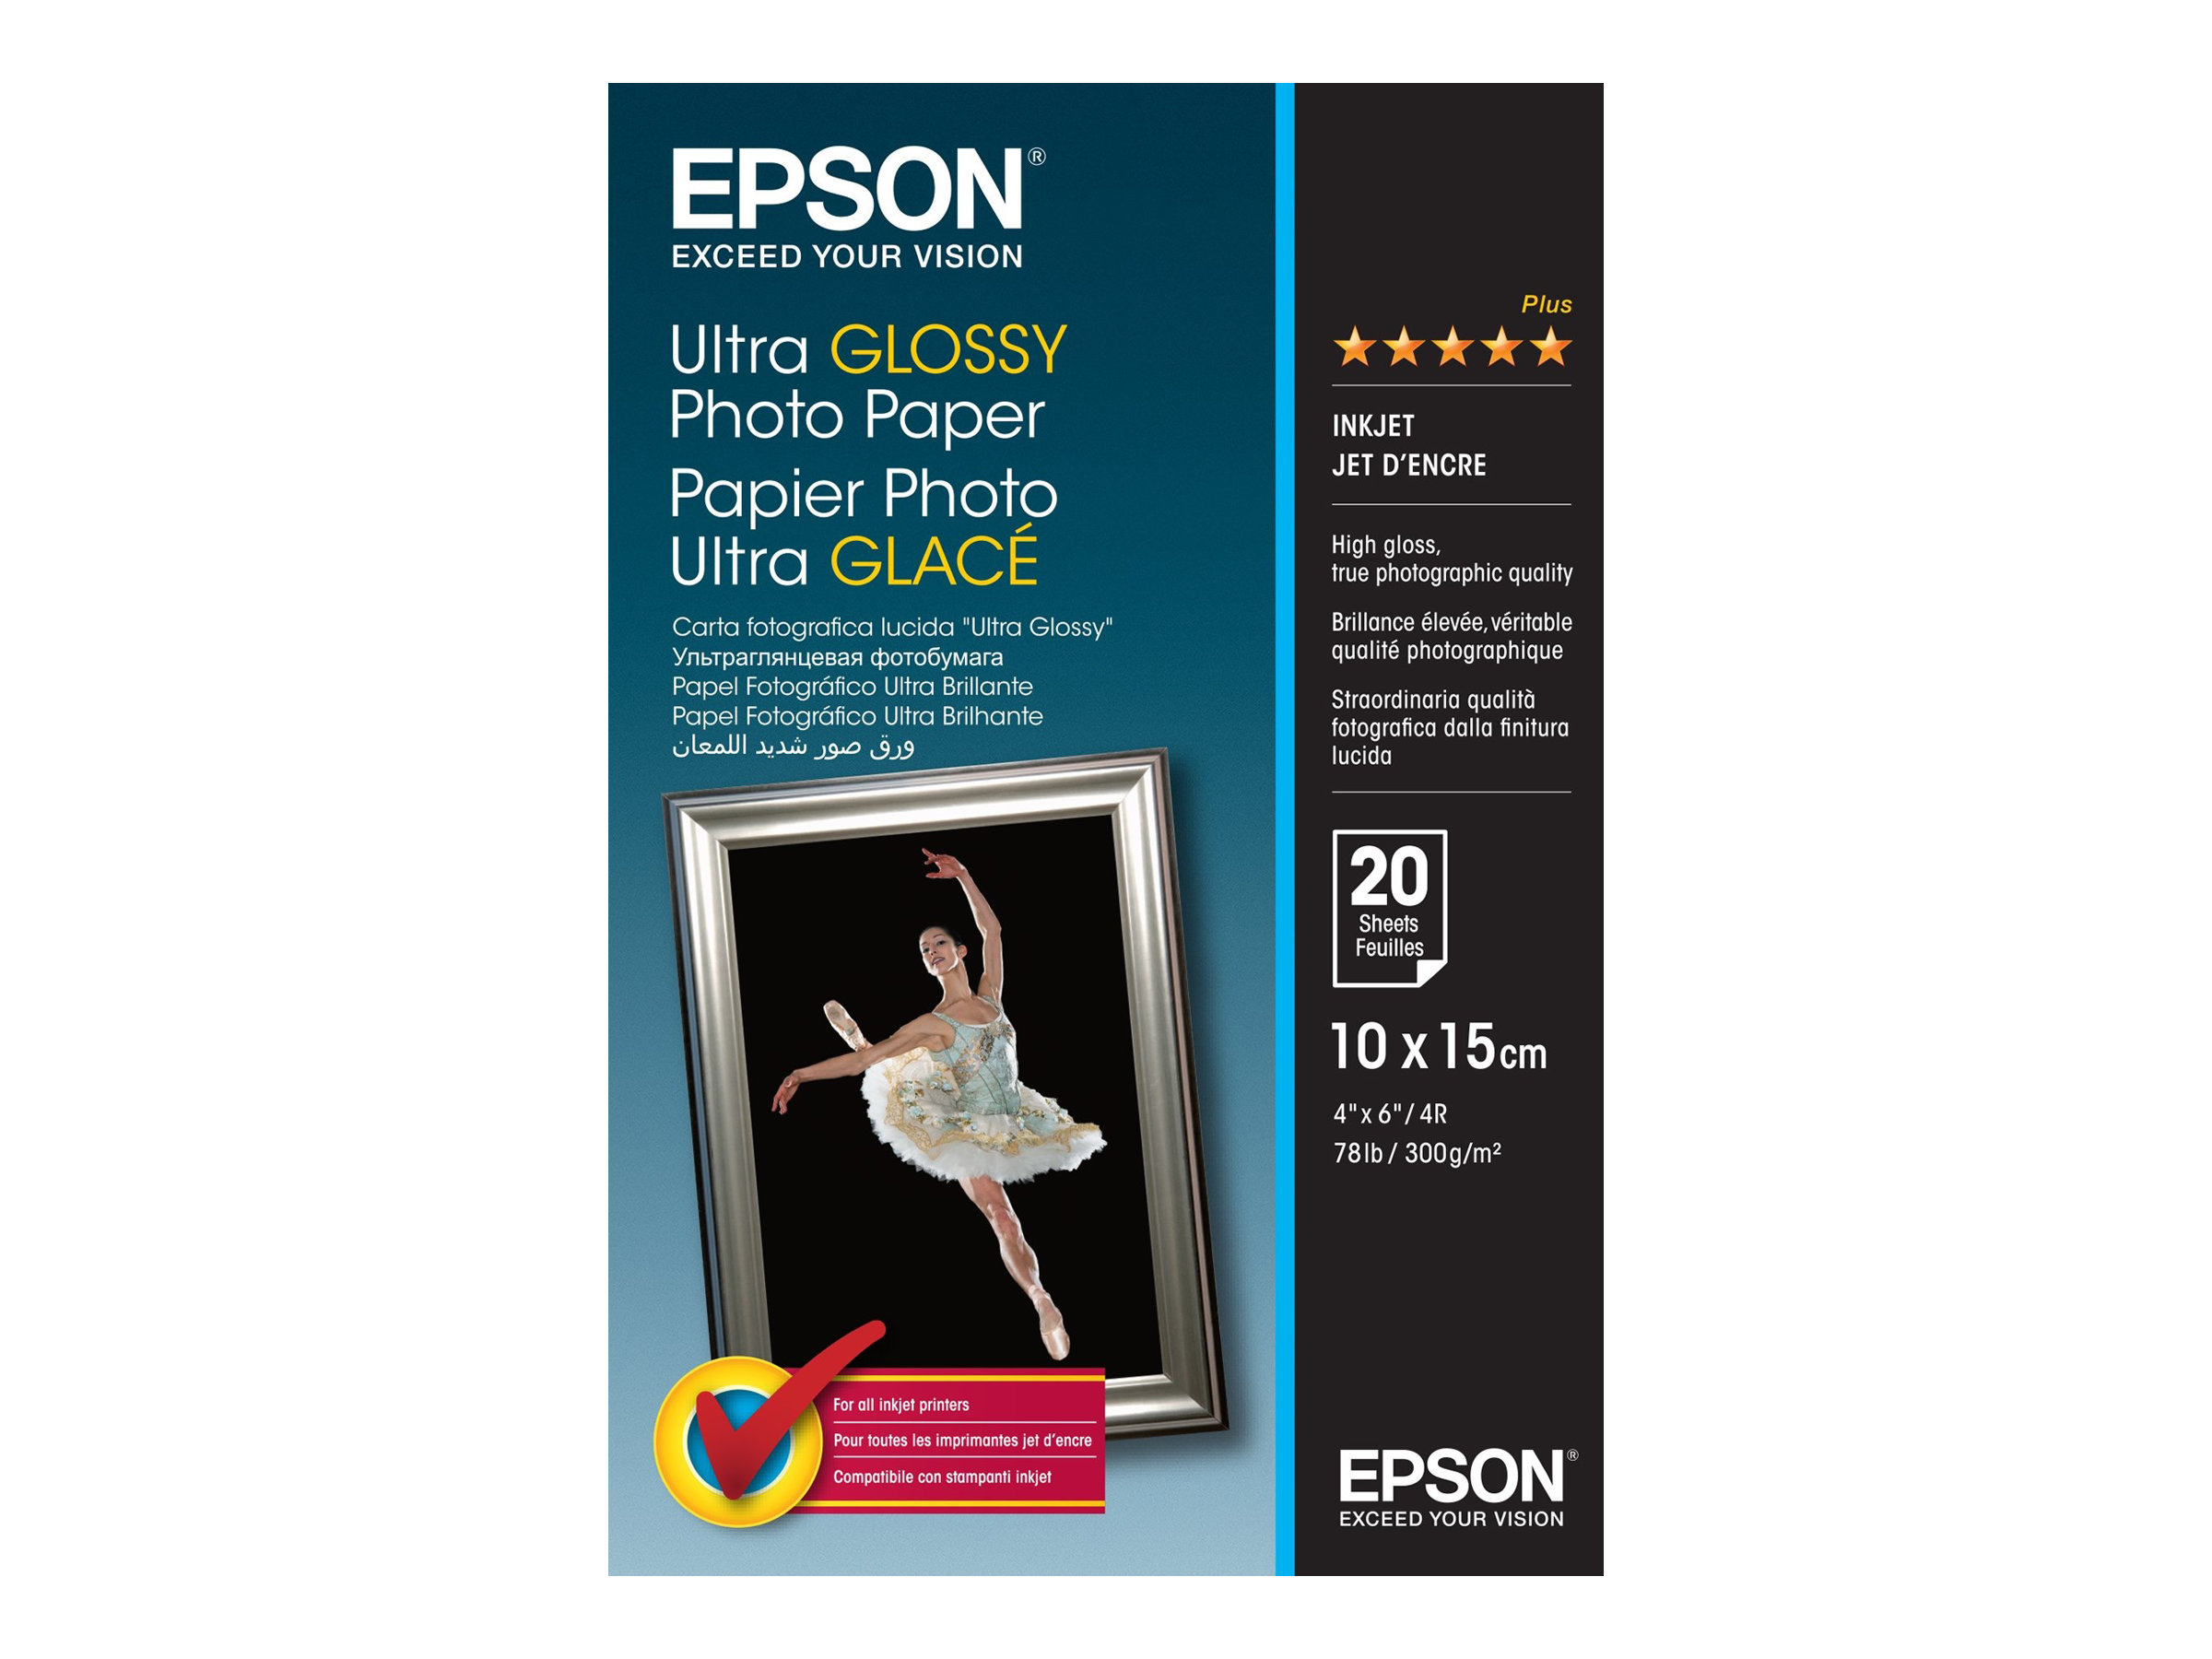 Epson Ultra Glossy Photo Paper - Brillant - 100 x 150 mm 20 feuille(s) papier photo - pour EcoTank ET-1810, 2810, 2811, 2814, 2815, 2820, 2825, 2826, 2850, 2851, 2856, 4800, 4850 - C13S041926 - Papier photo